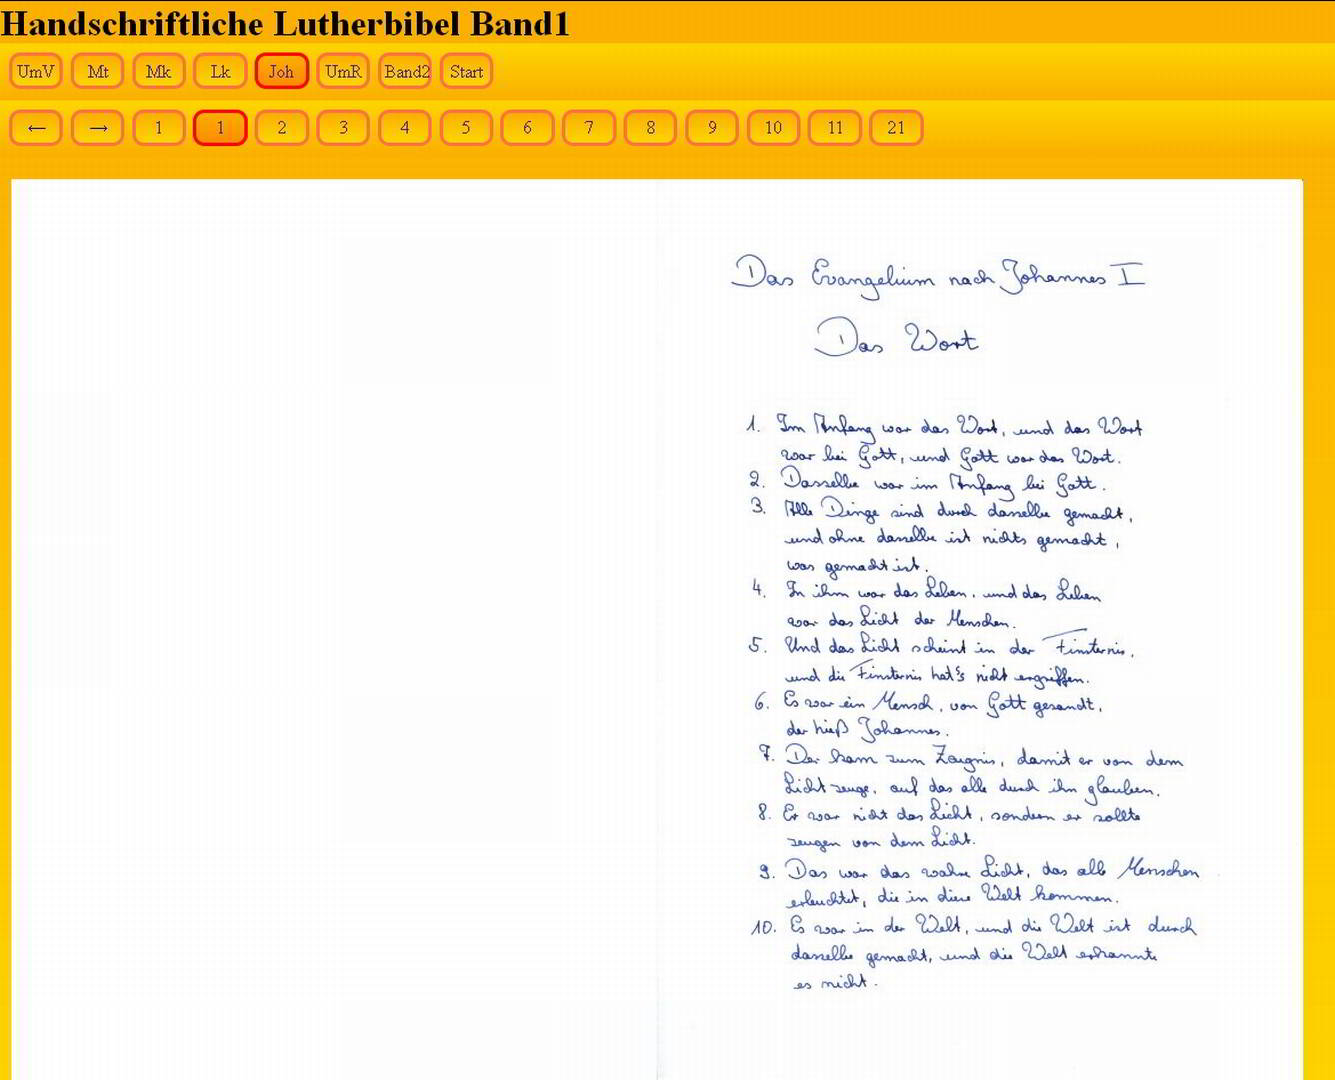 Handschriftliche Lutherbibel - Mit Johannes ist der 1. Band komplett online gestellt